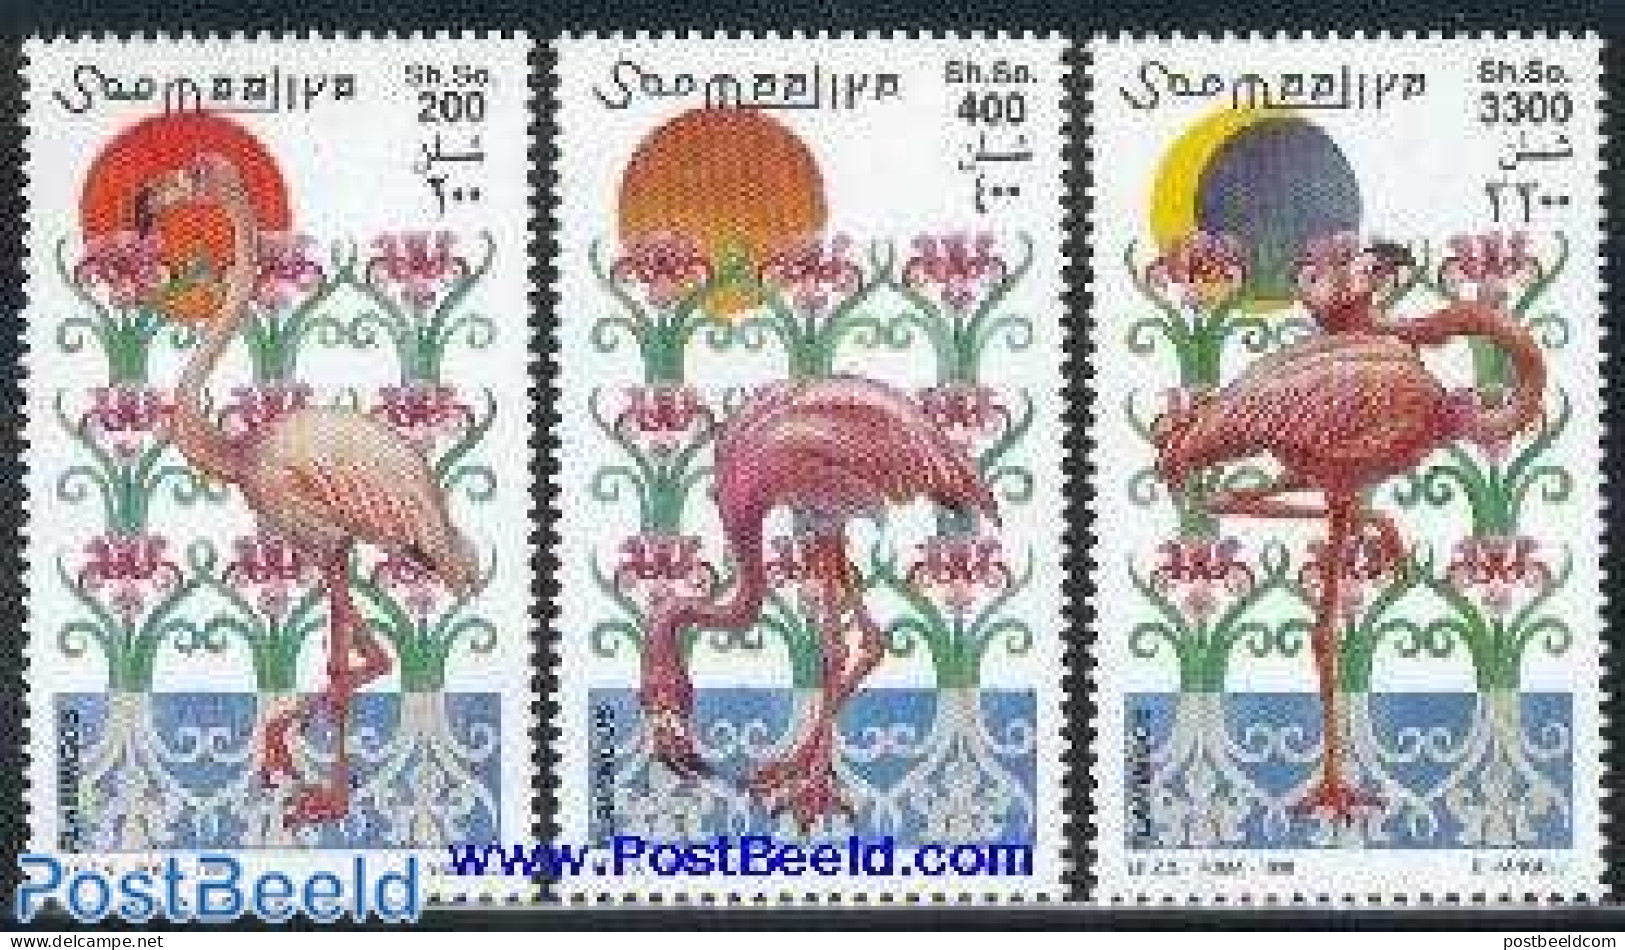 Somalia 1998 Flamingoes 3v, Mint NH, Nature - Birds - Flamingo - Somalie (1960-...)